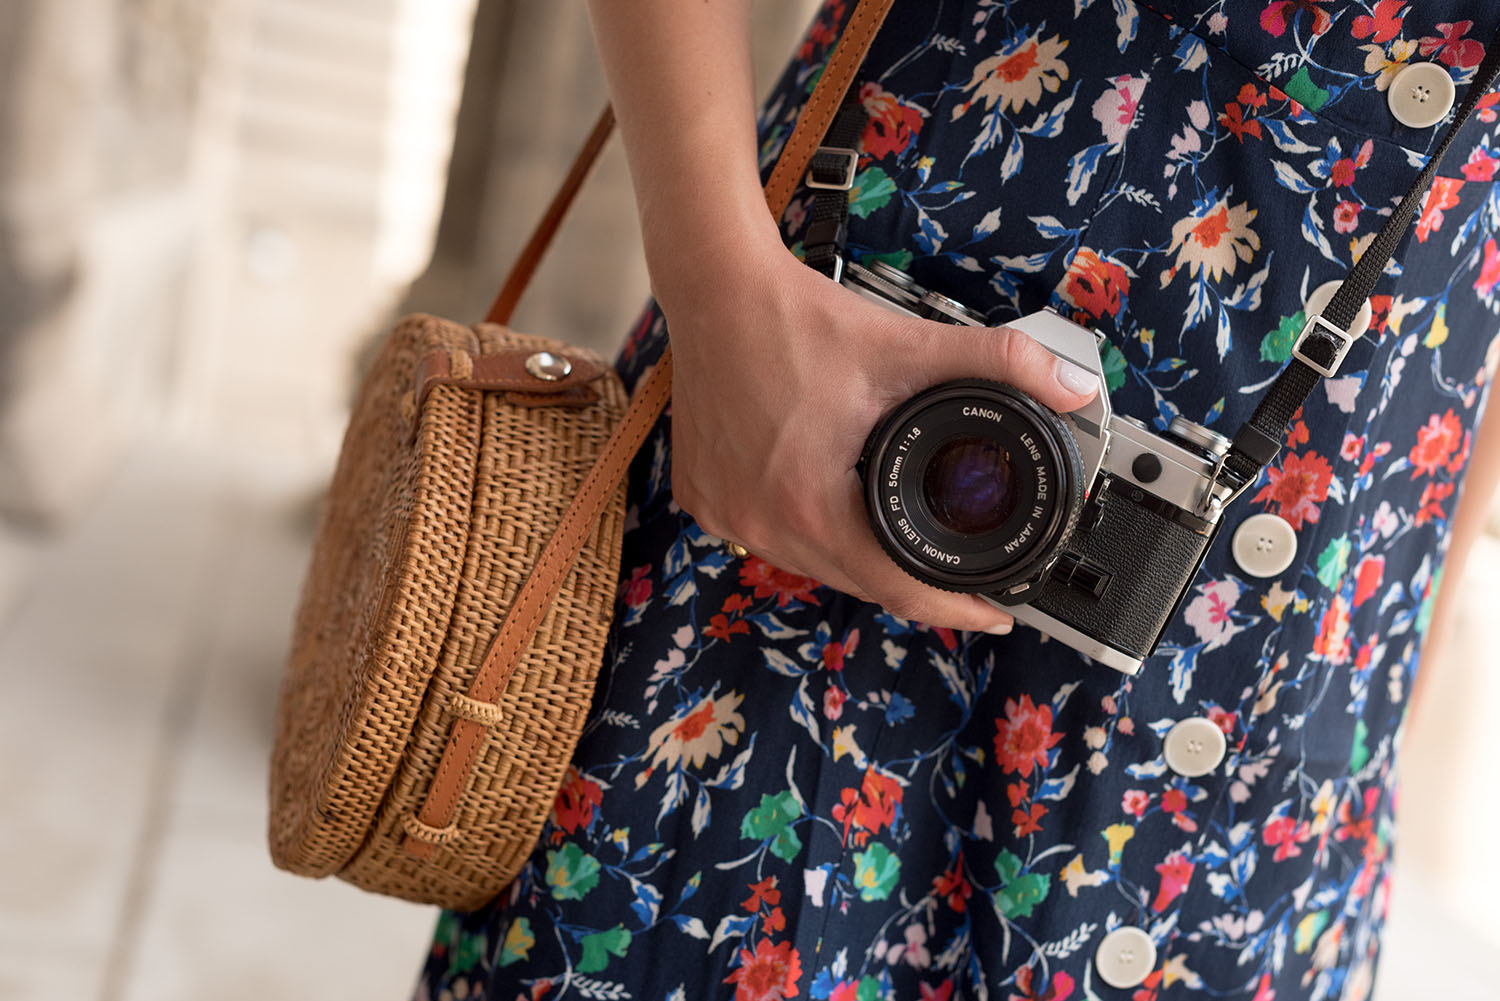 Coco & Vera - Suzanne floral dress, Ellen James rattan bag, Canon AE-1 camera